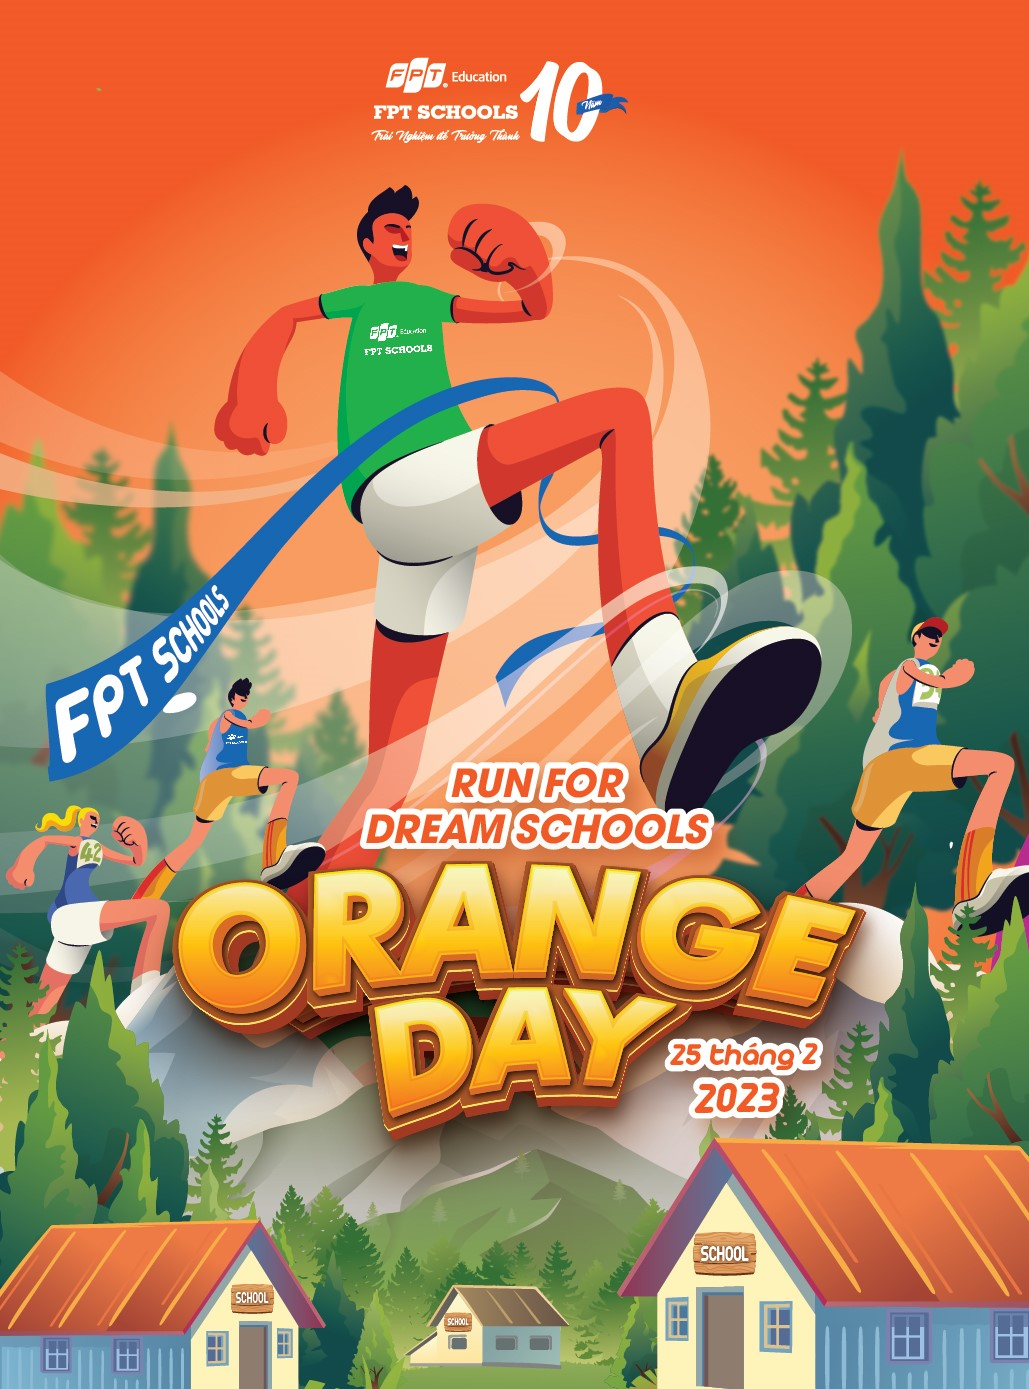 FPT Schools phát động giải chạy Orange Day - Run for Dream Schools